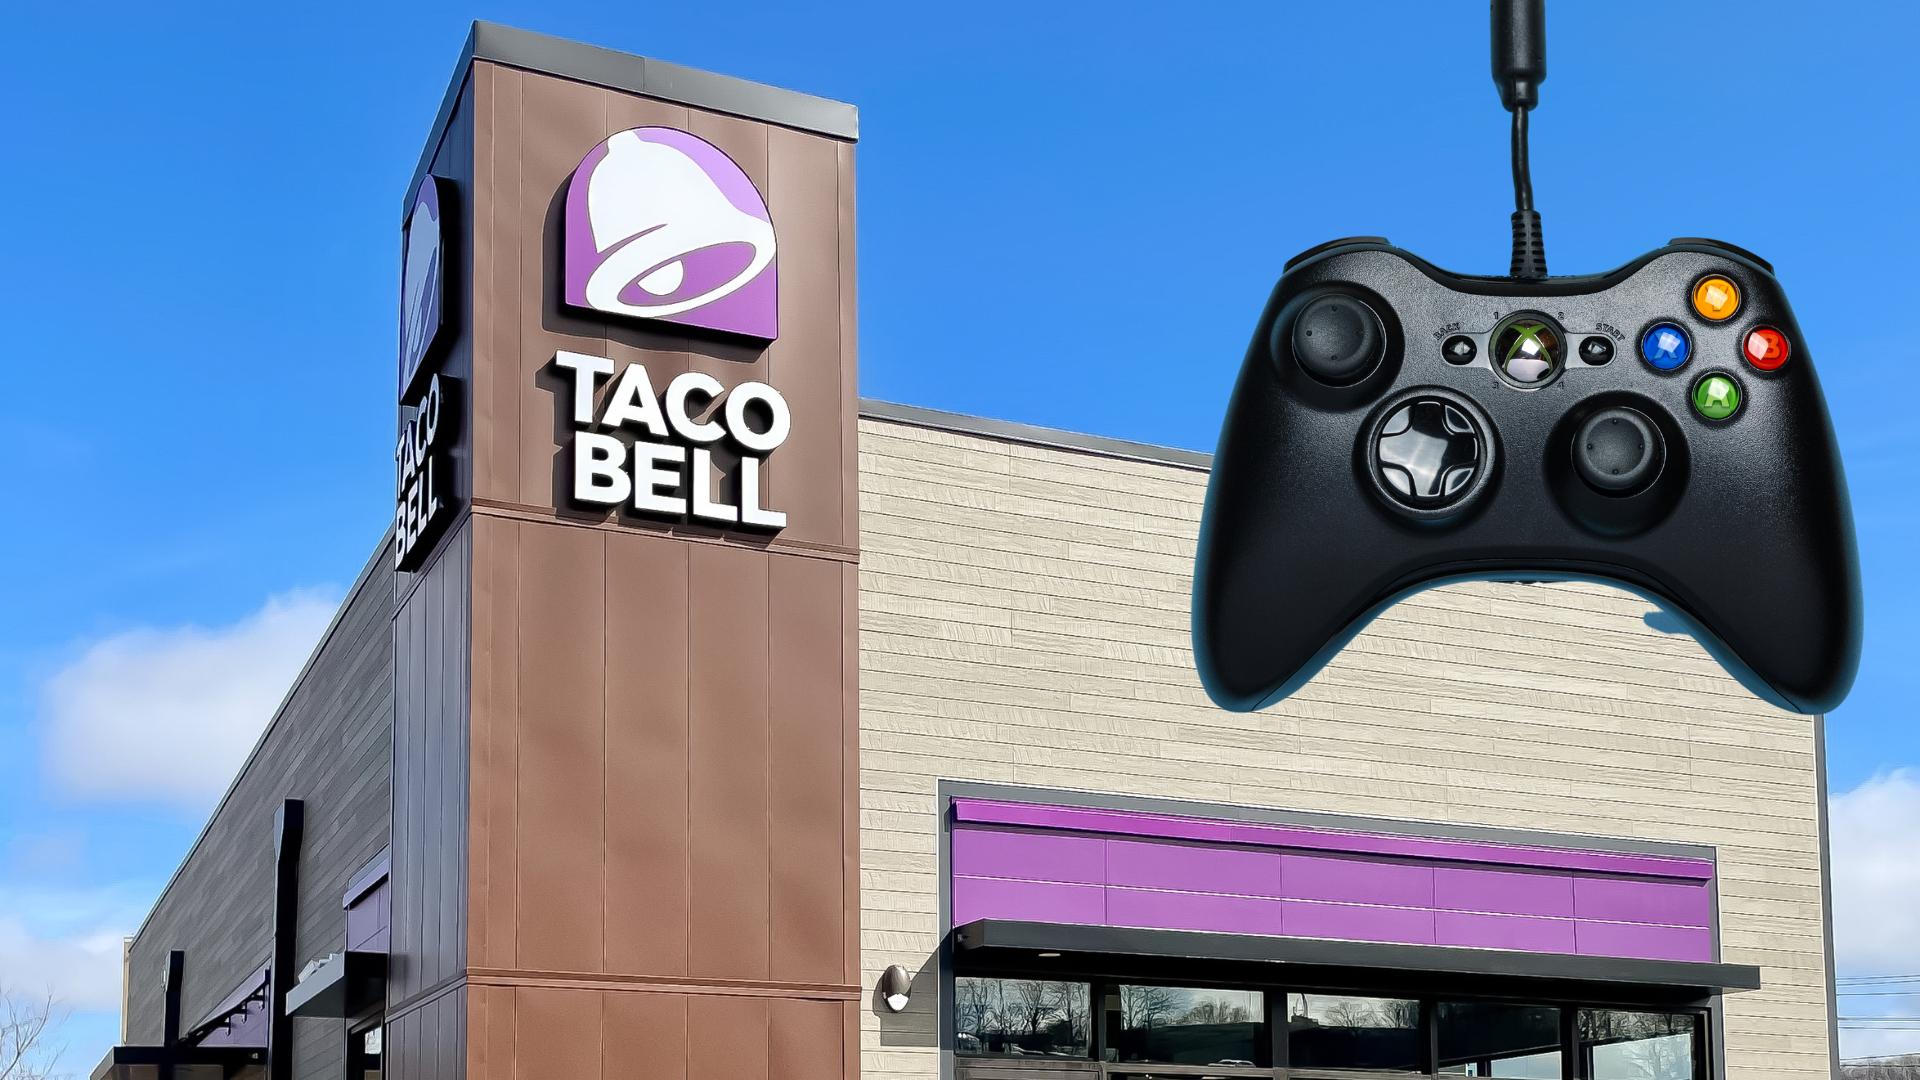 il ristorante Taco Bell e il controller Xbox per rappresentare la collaborazione